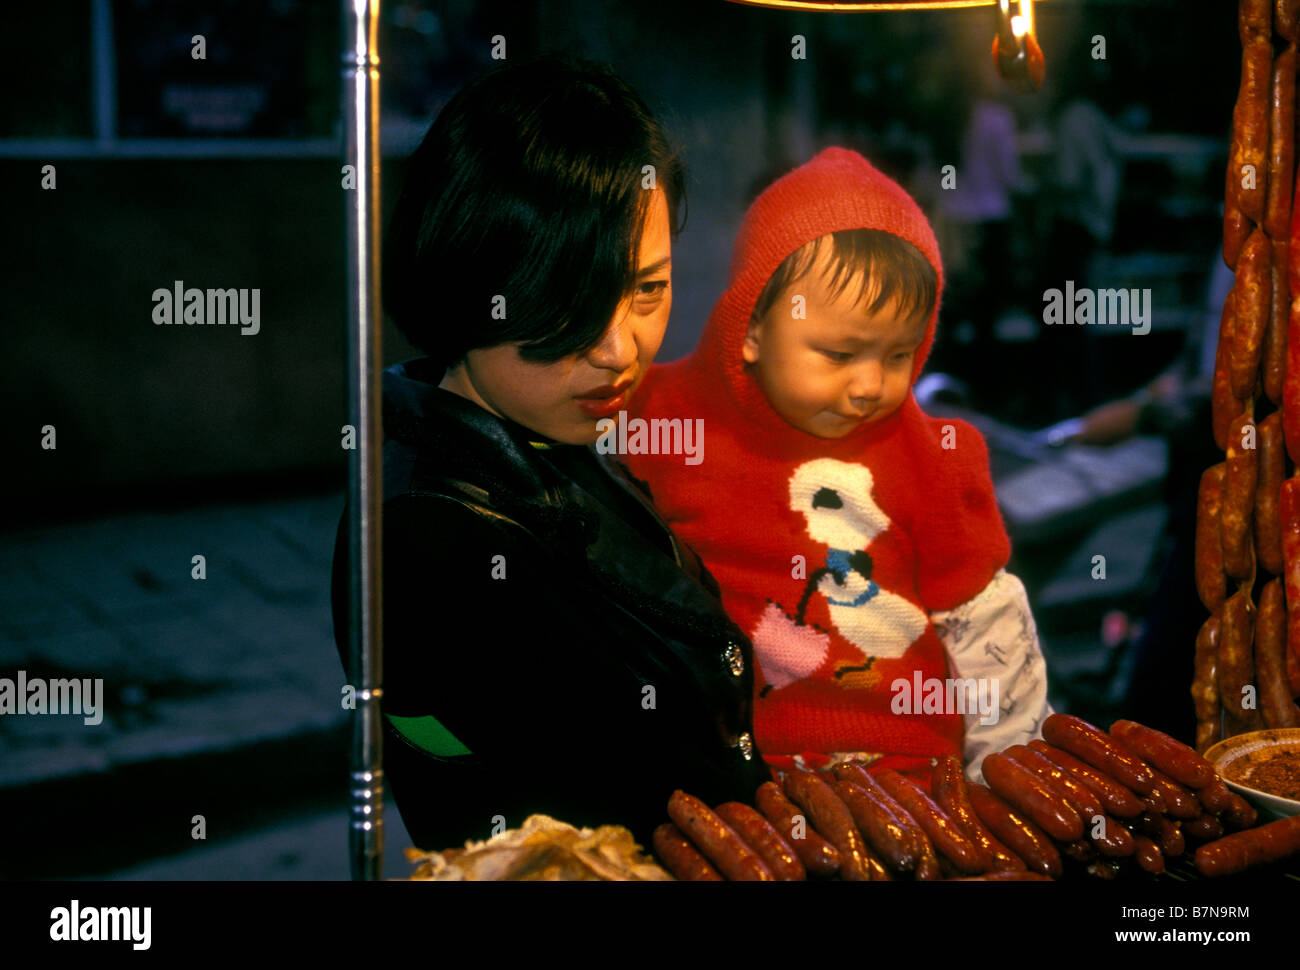 Le peuple chinois, femme chinoise, femme adulte, femme, jeune garçon, bébé garçon, garçon, mère et fils, enfant, Kunming, Province du Yunnan, Chine Banque D'Images